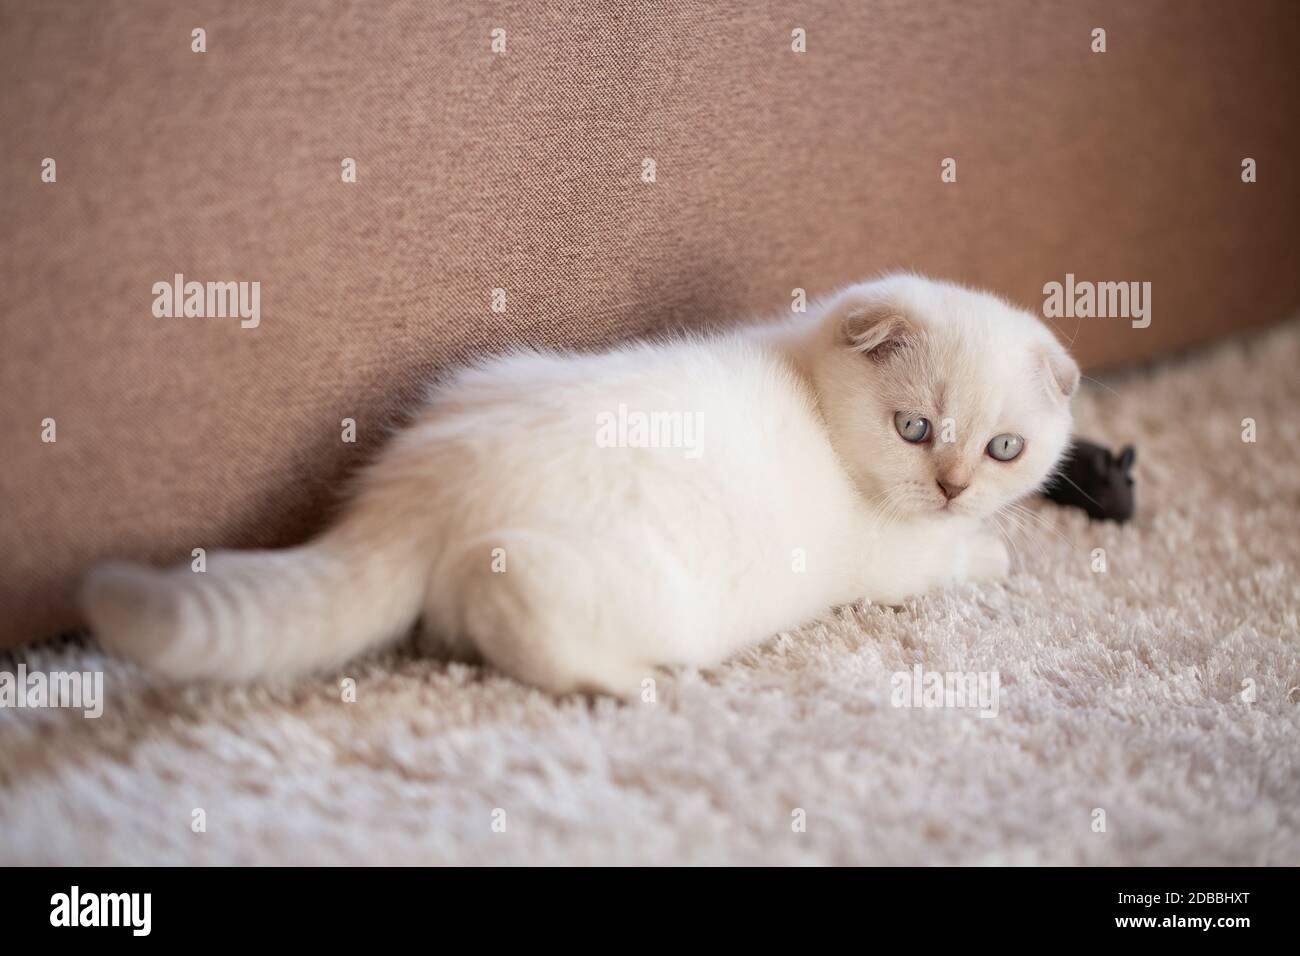 Un lindo gatito blanco está acostado en una alfombra suave en el suelo y jugando con un ratón de juguete. Gatito juguetón en la habitación. Foto de stock